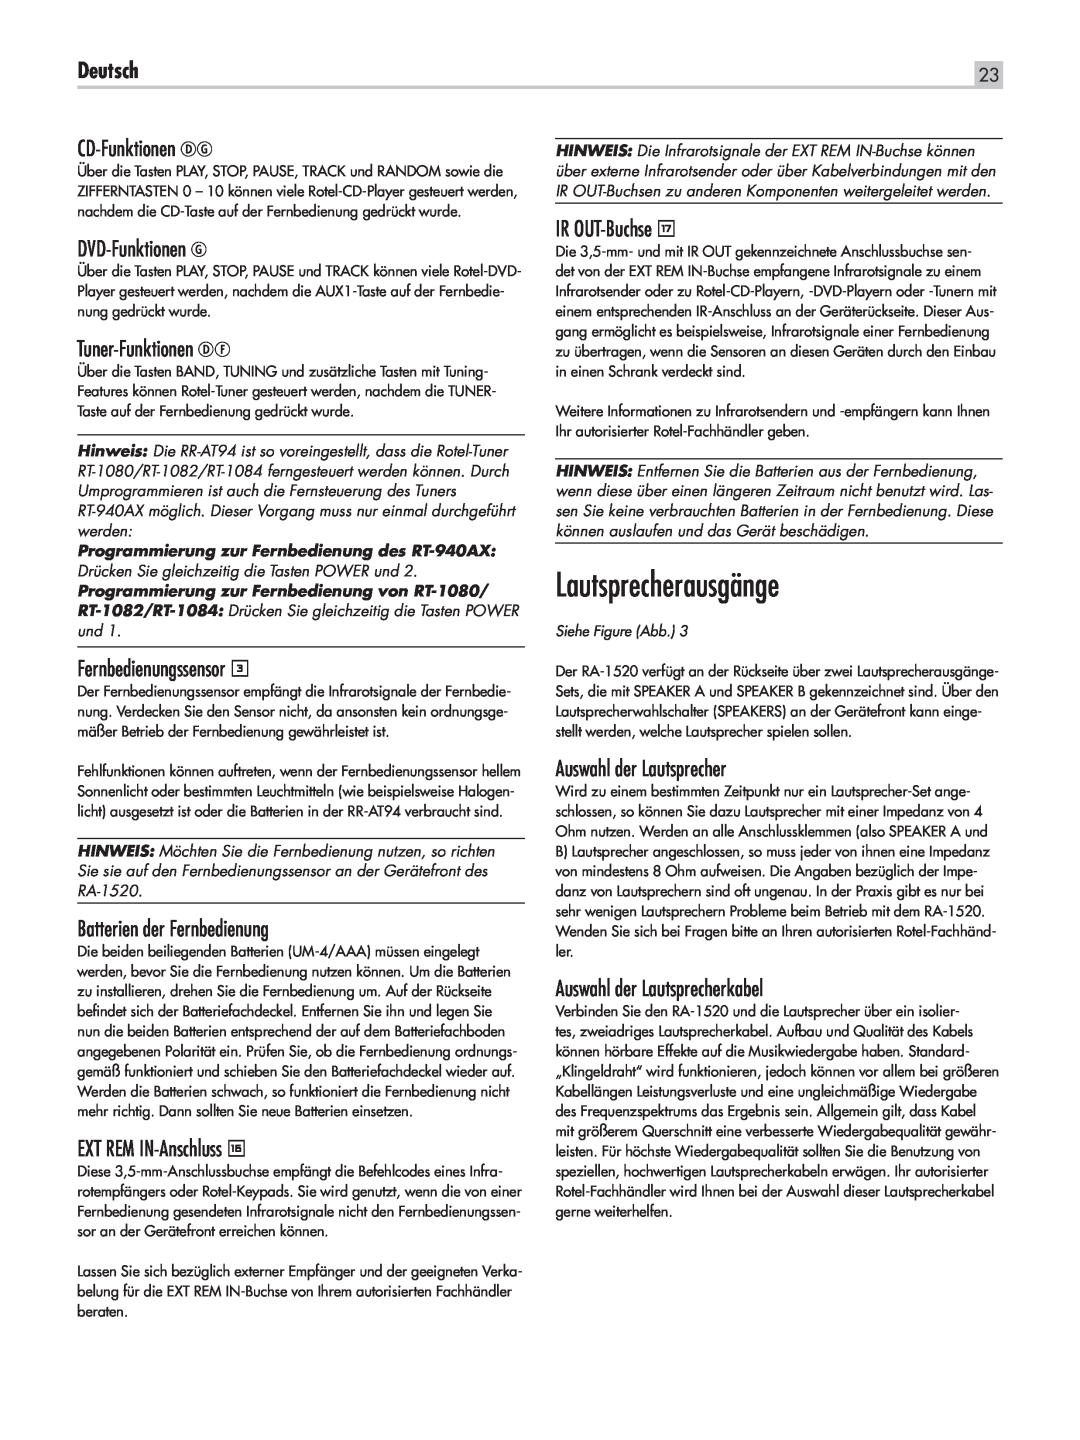 Rotel RA-1520 Lautsprecherausgänge, Deutsch, CD-Funktionen DG, DVD-Funktionen G, Tuner-Funktionen DF, Fernbedienungssensor 